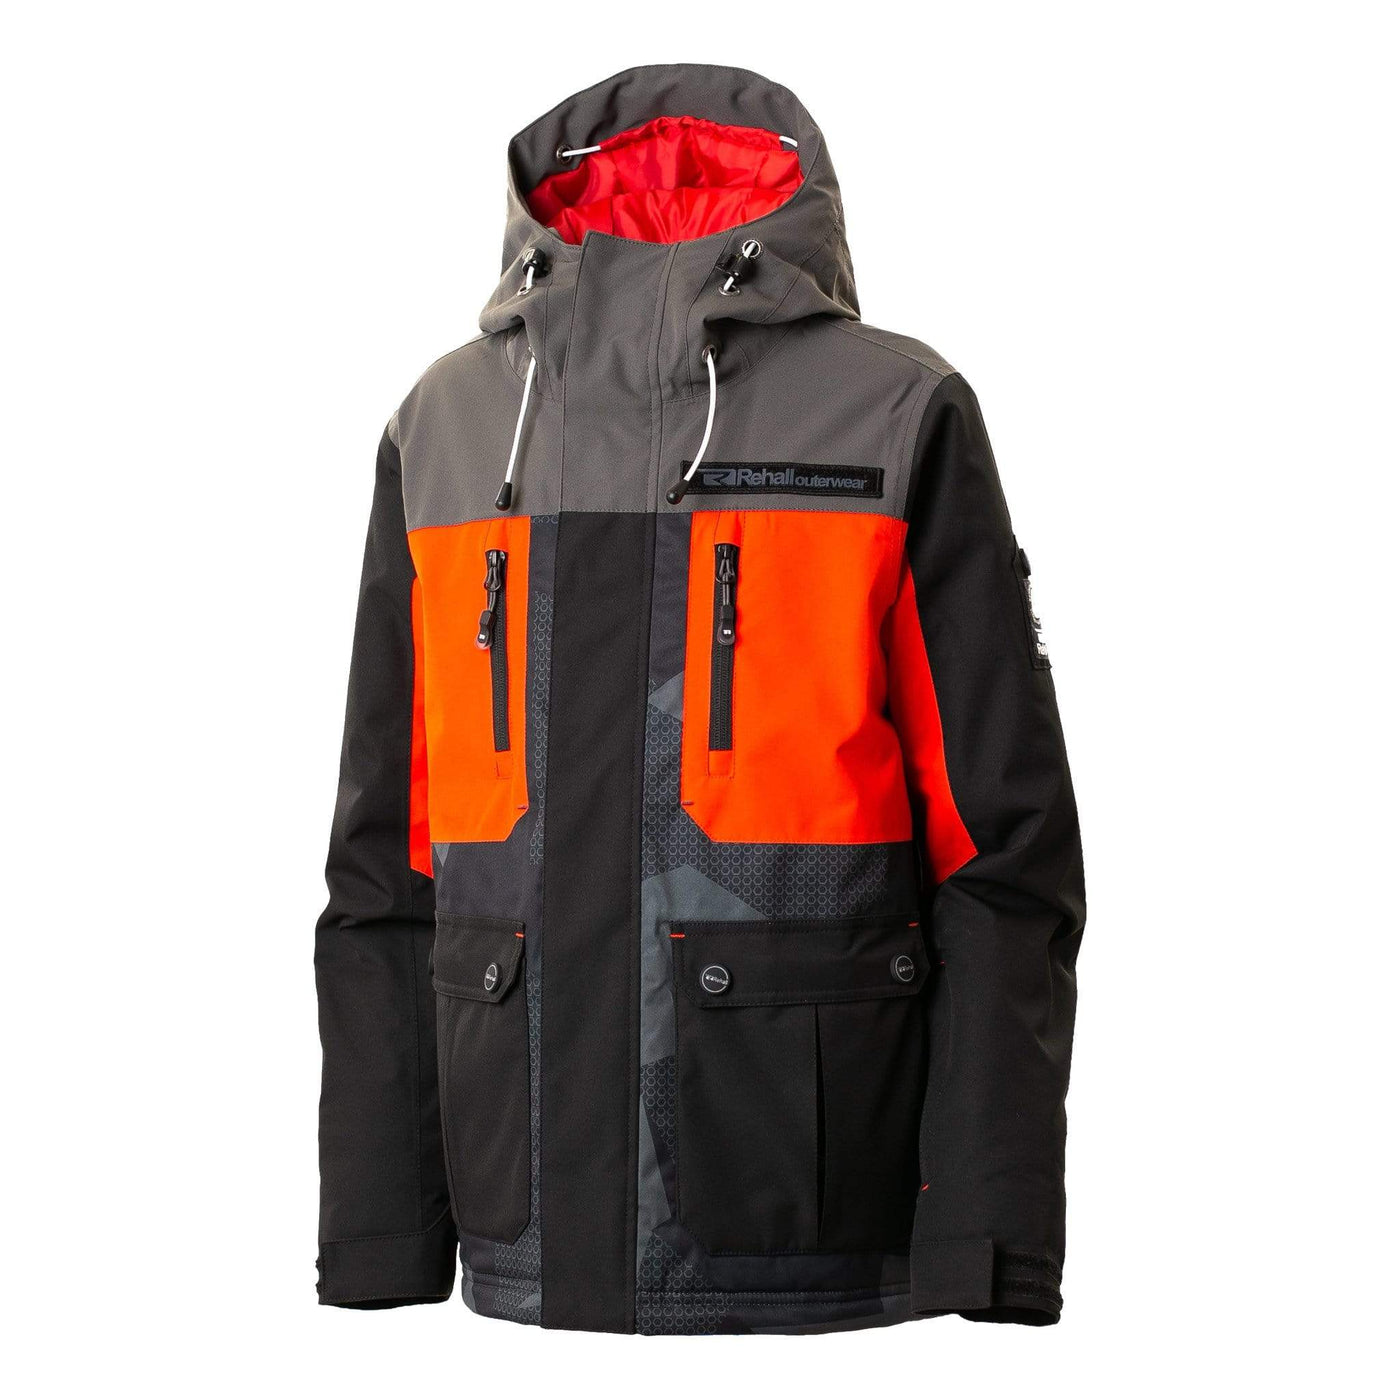 SnowKids Outerwear Jacket 116 Rehall Hampton Jr Boys Snow Jacket